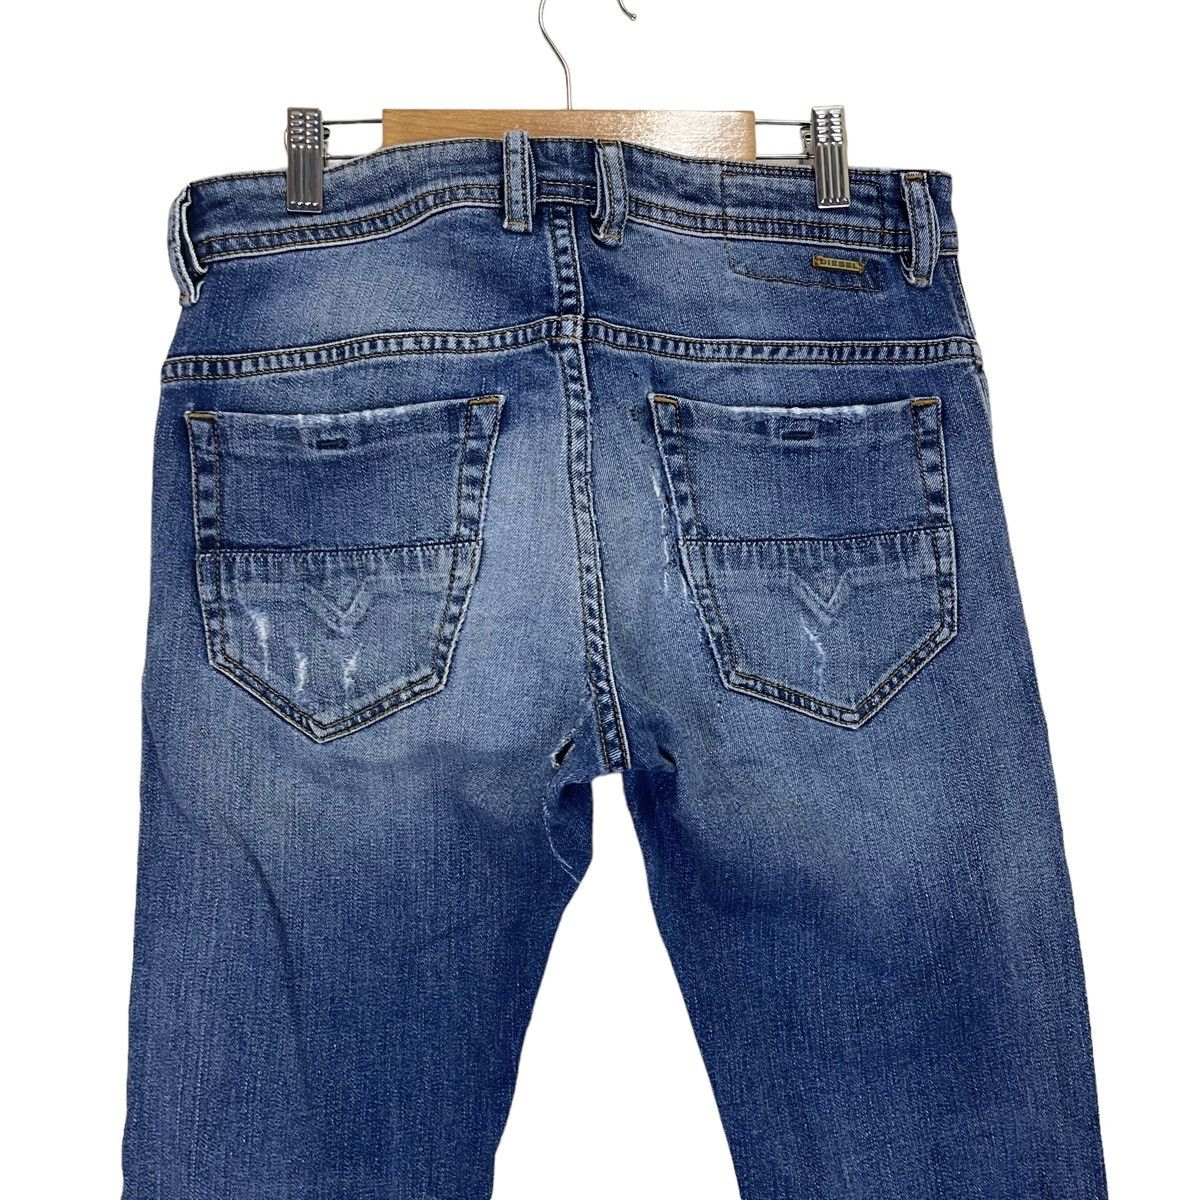 Diesel Industry Thommer Slim Skinny Distressed Jeans - 6